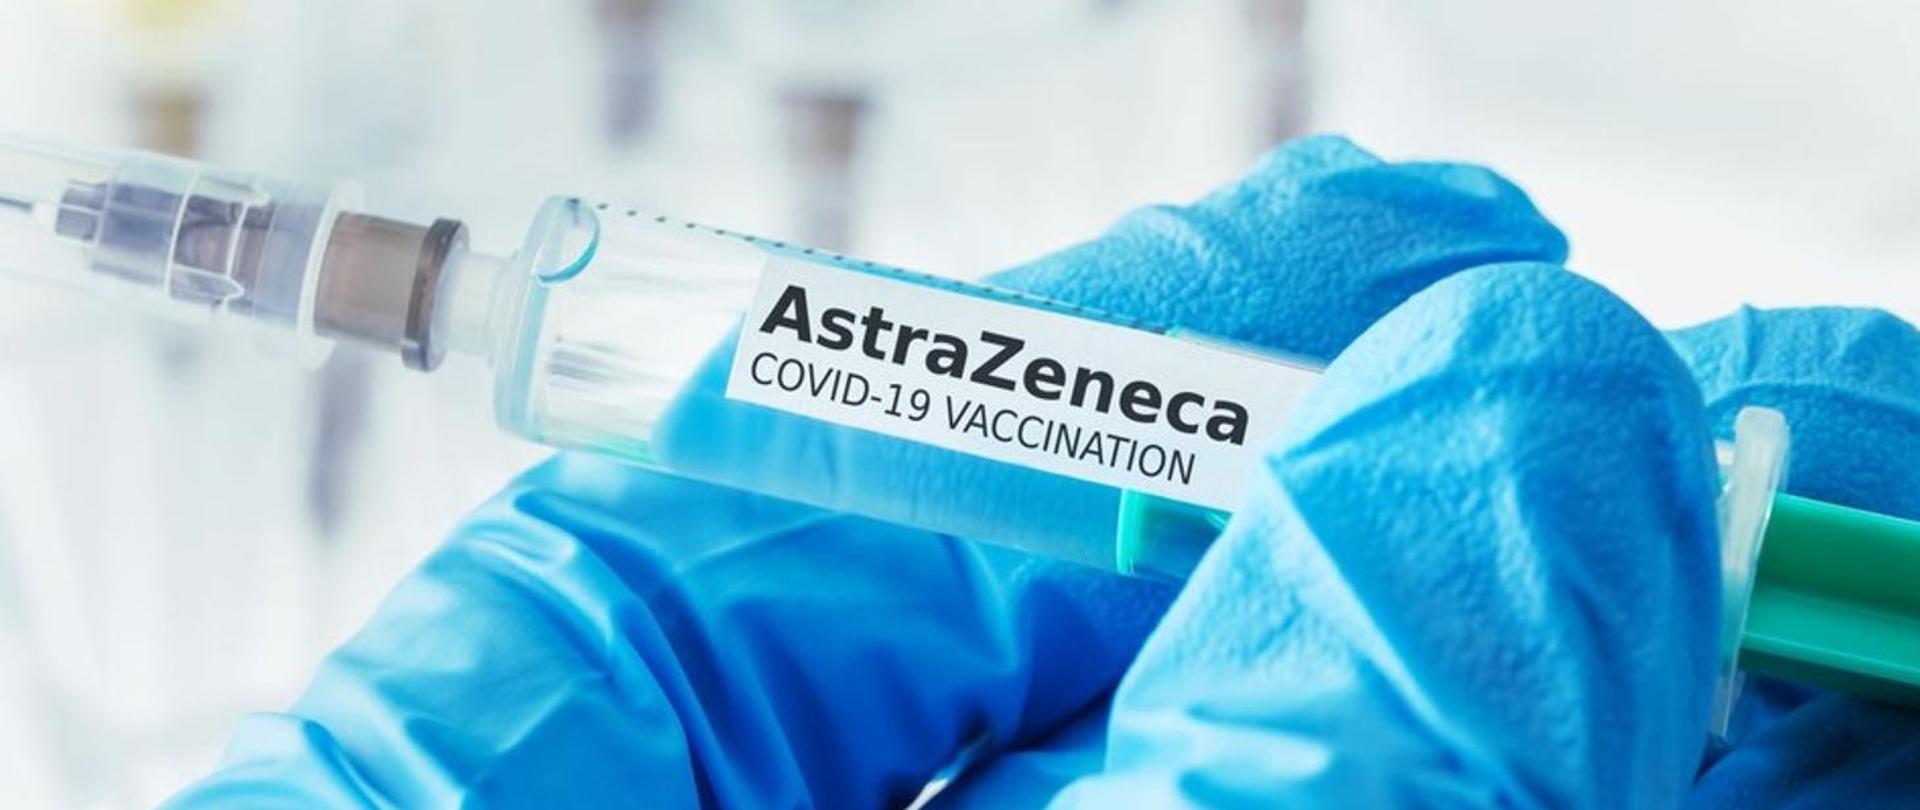 AstraZeneca_COVID-19_VACCINATION